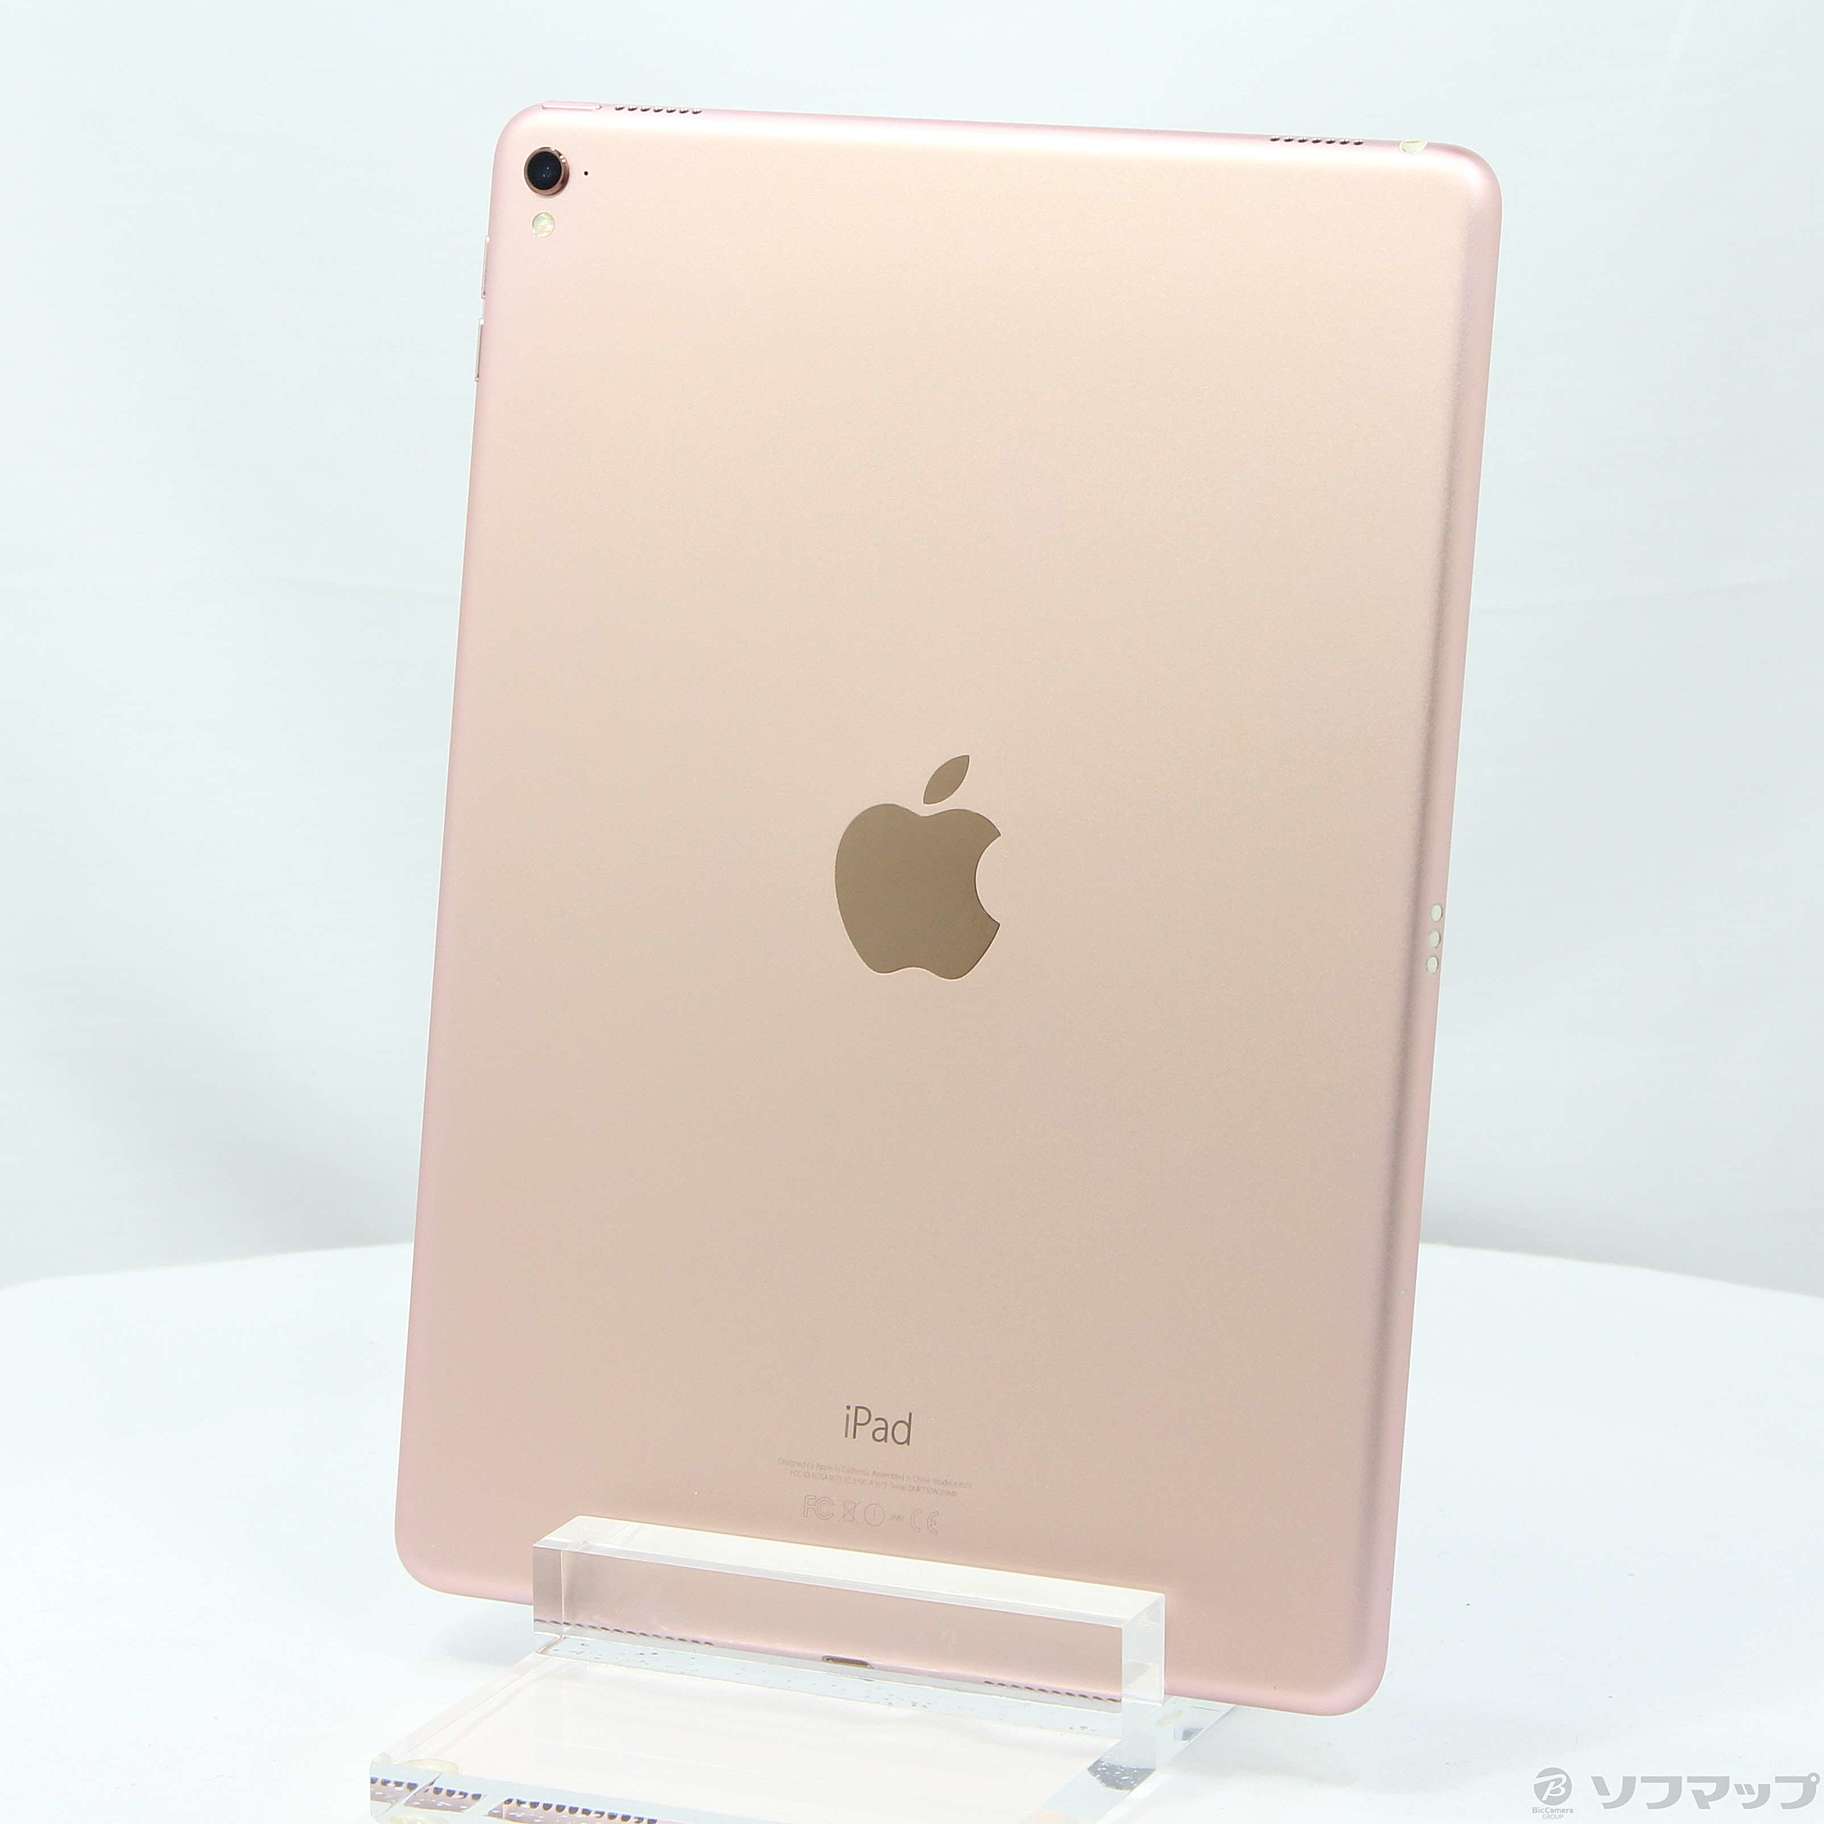 PC/タブレット速対応 iPad pro 32GB ローズゴールド Applepencil対応